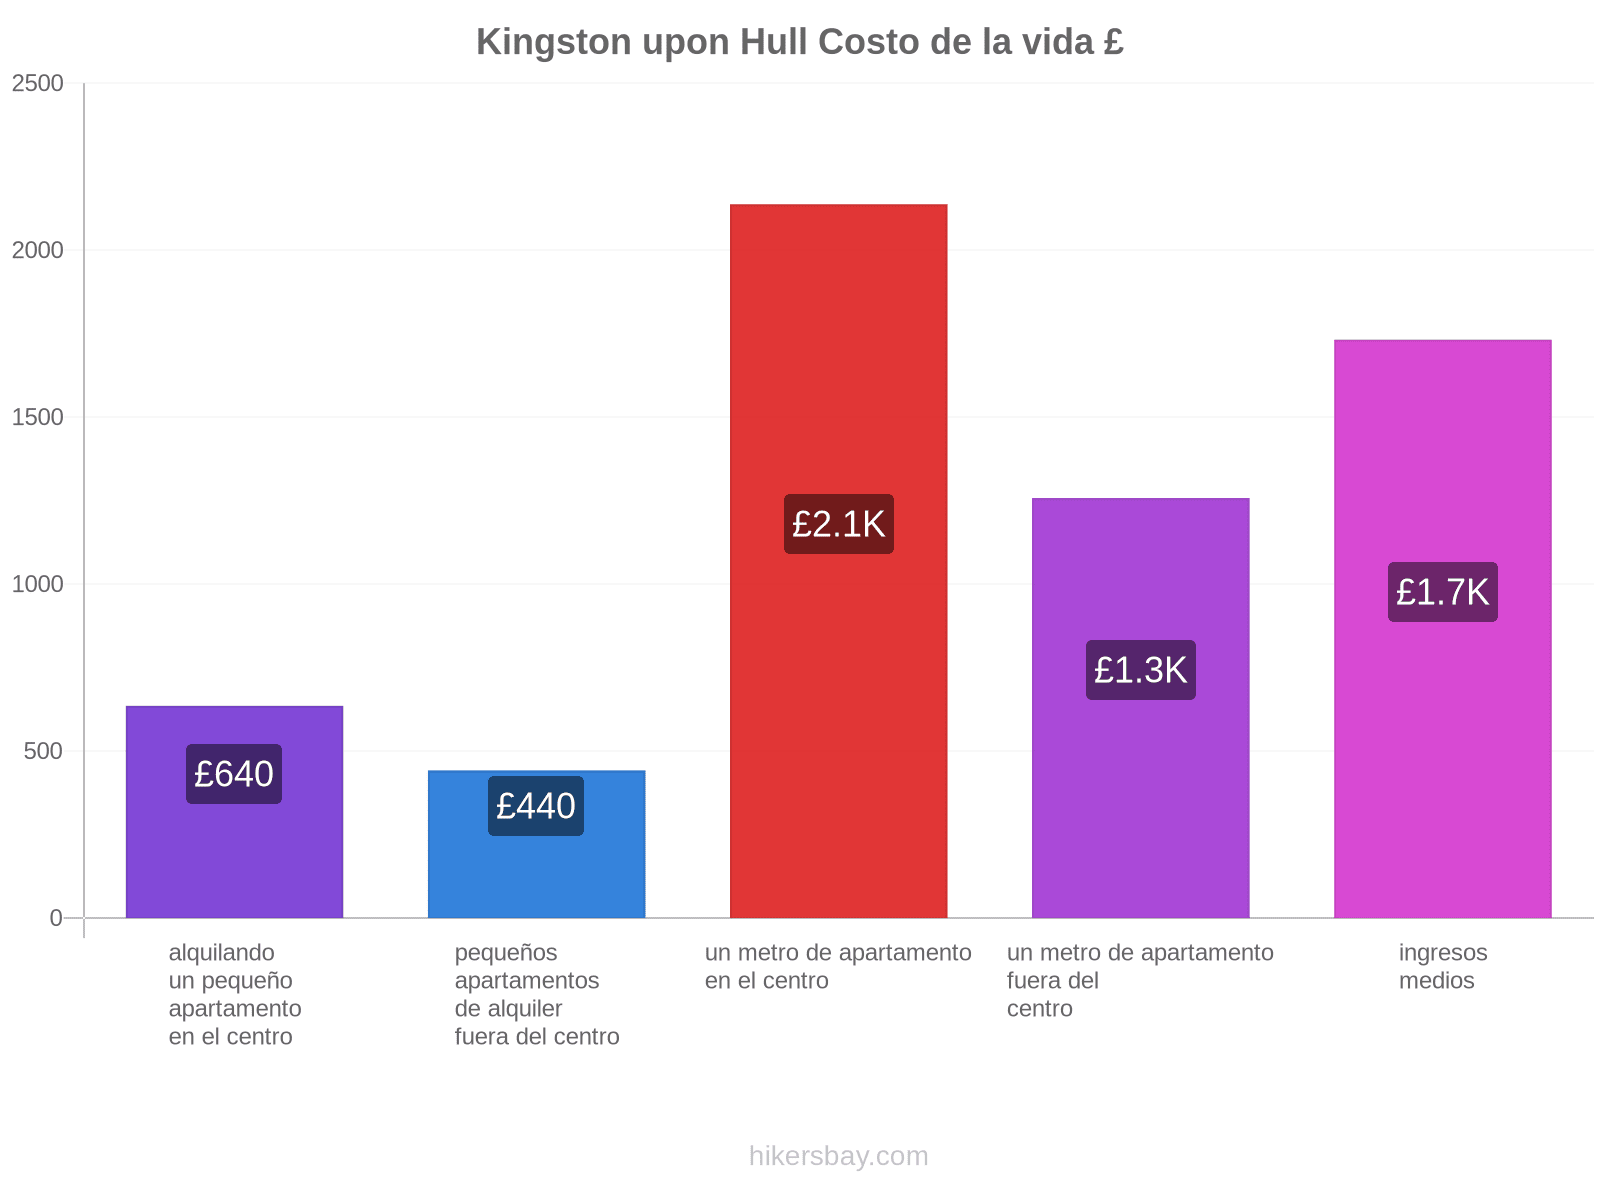 Kingston upon Hull costo de la vida hikersbay.com